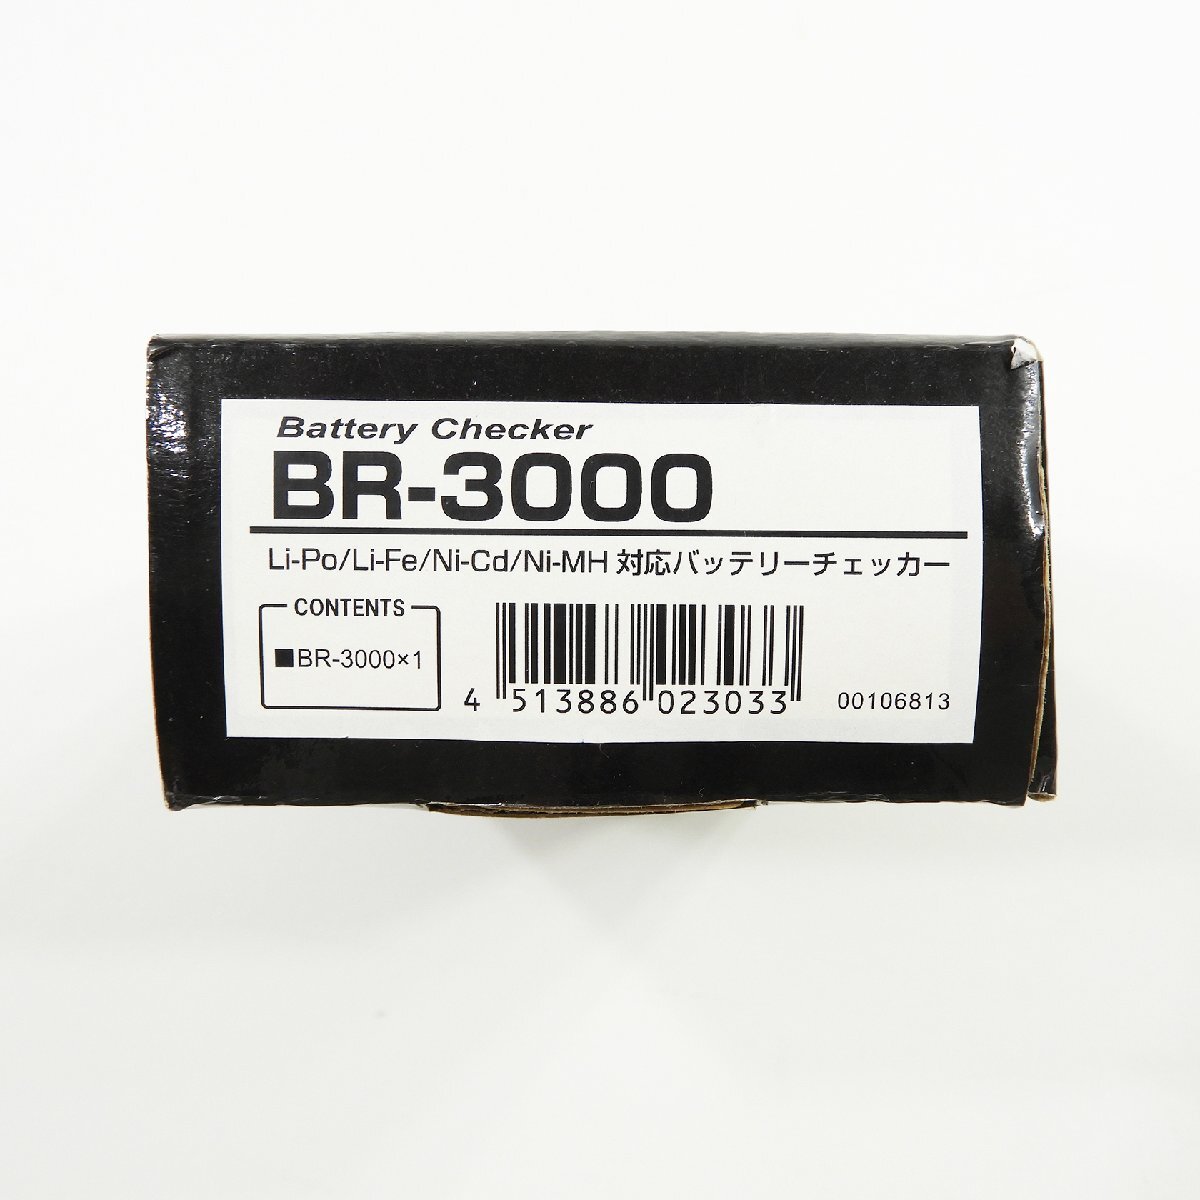 Futaba フタバ BR-3000 バッテリーチェッカー #17861 ラジコン RC 趣味 ホビー アクセサリー